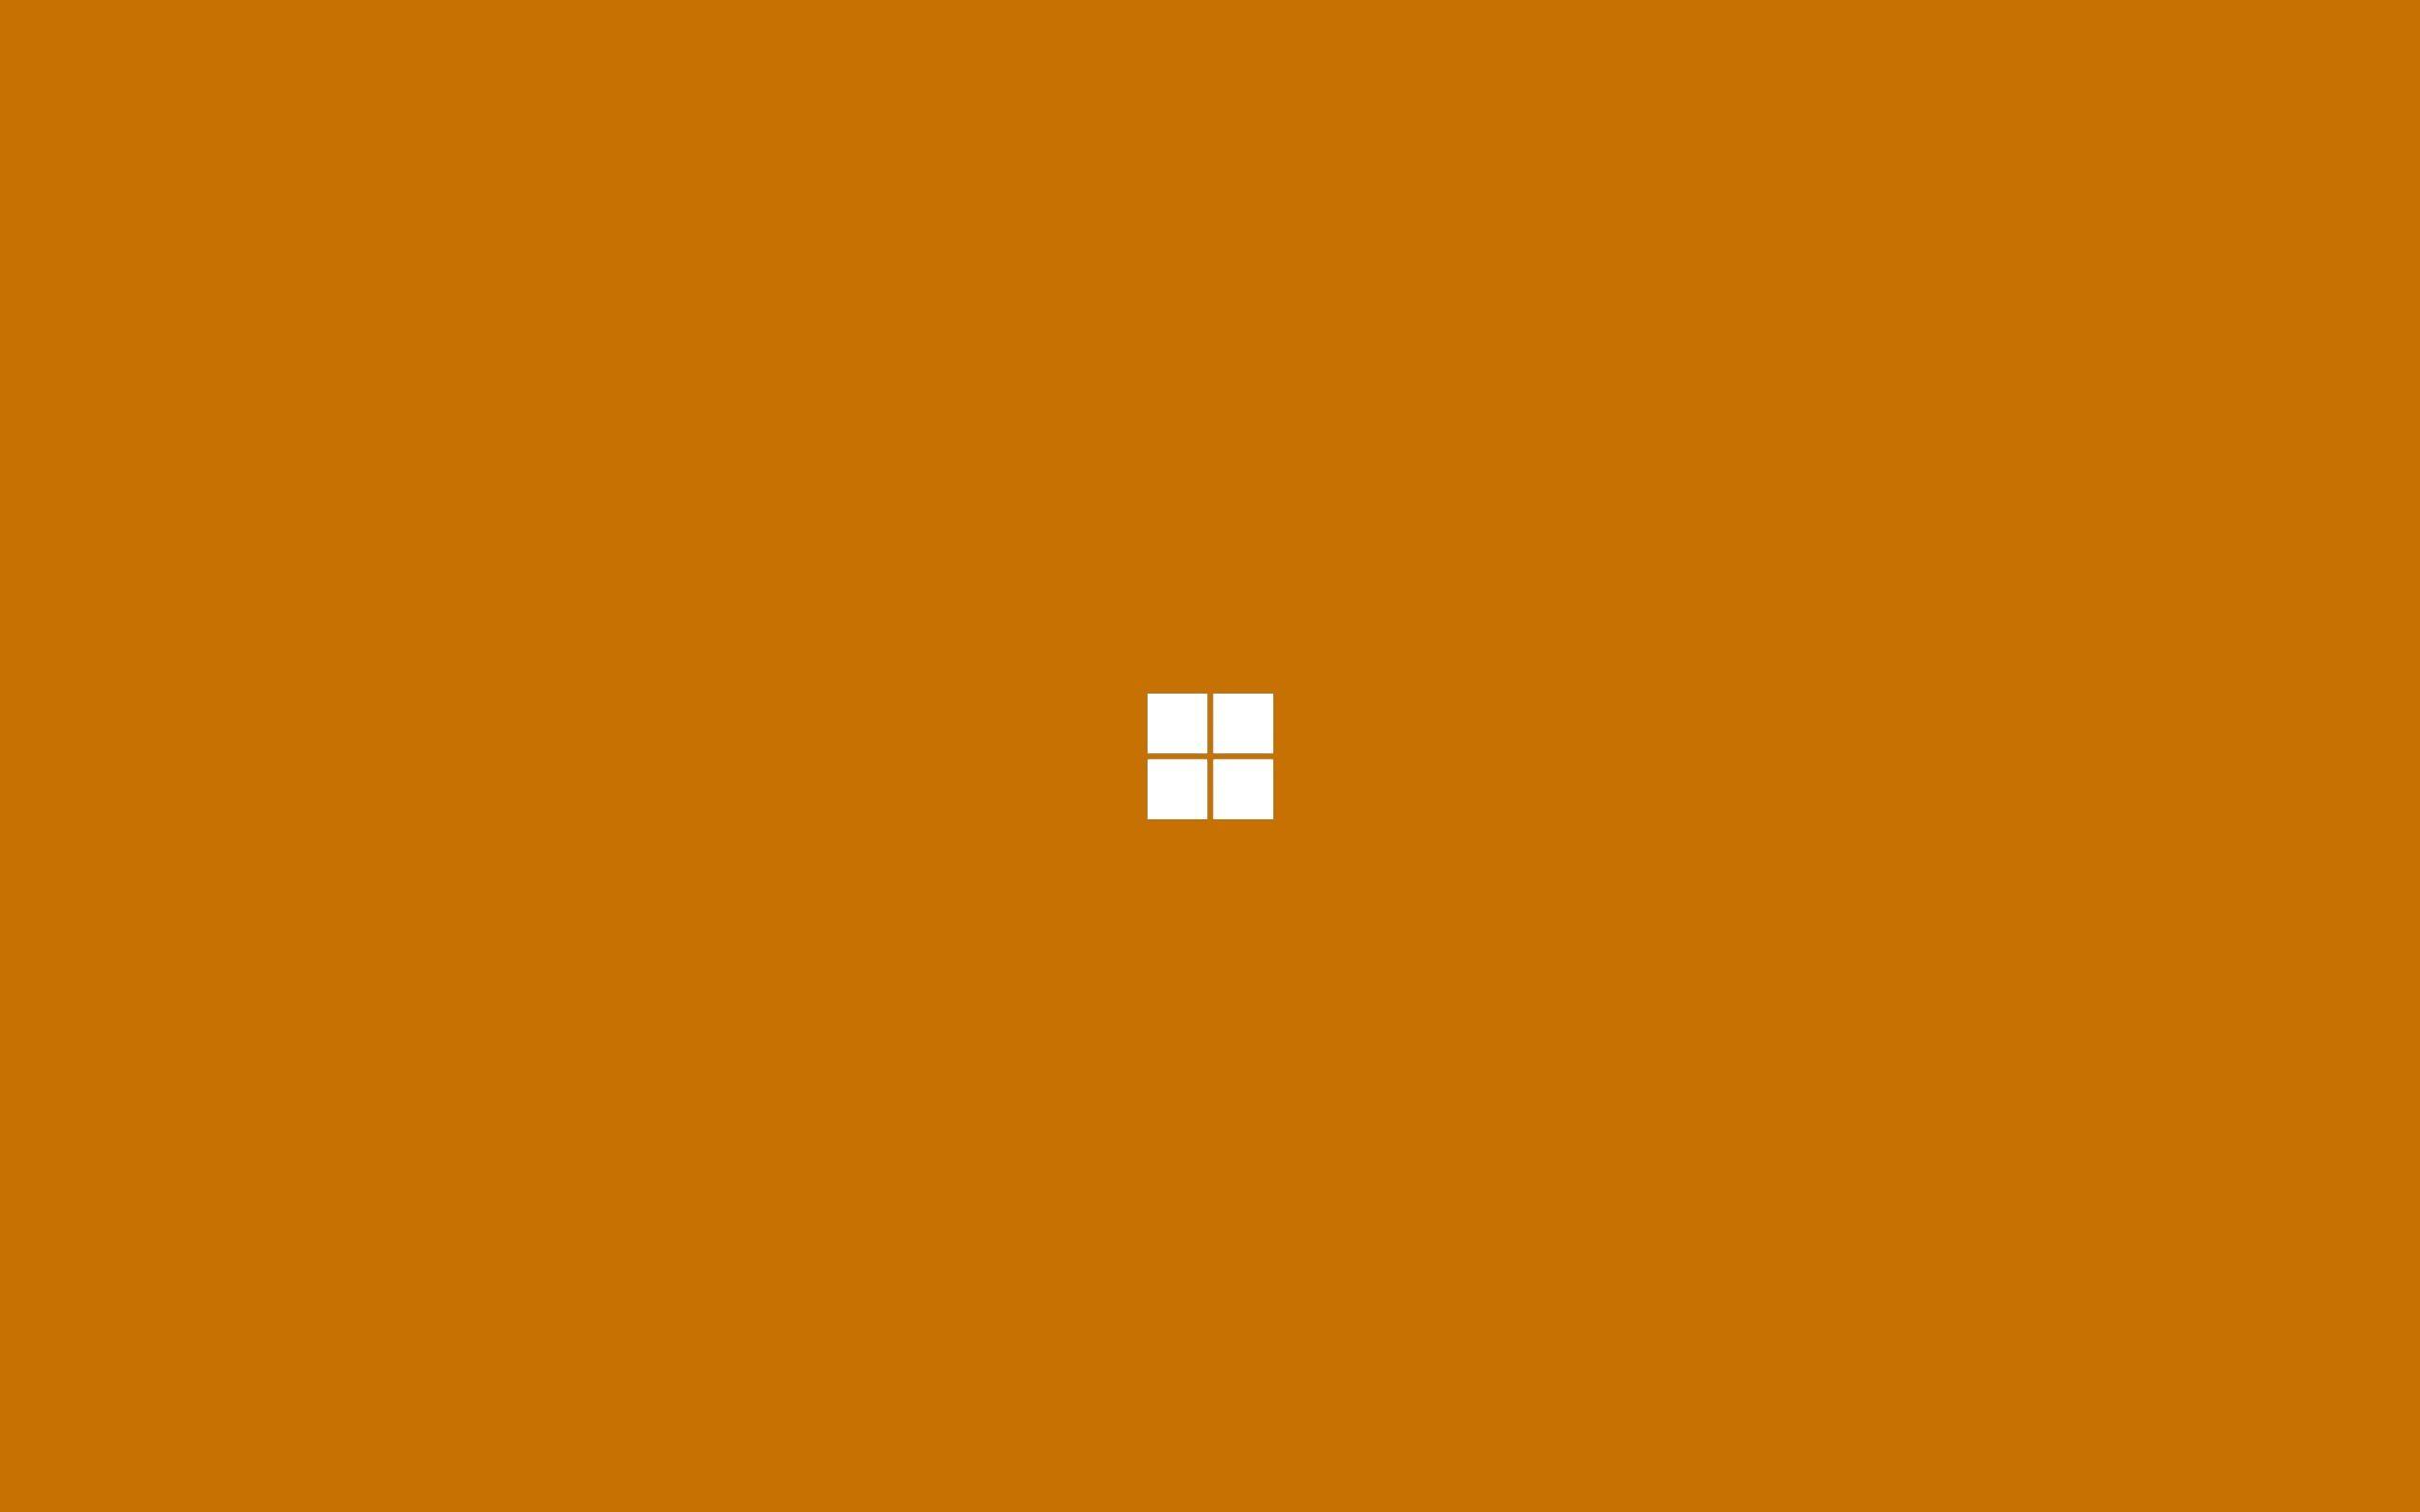 Orange Circle Computer Logo - Wallpaper : simple background, minimalism, text, logo, yellow ...